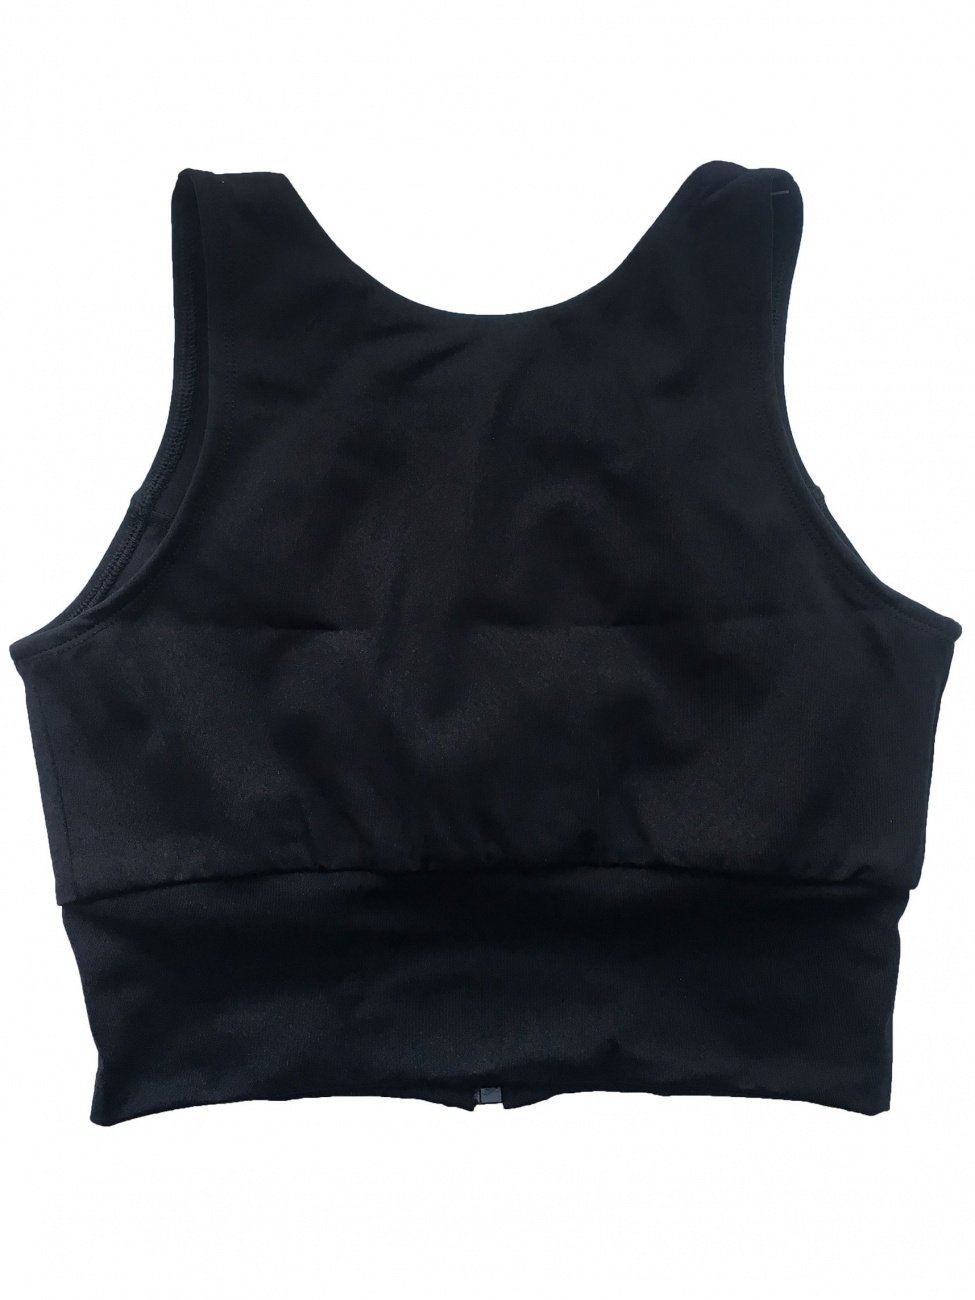 Топ Comfort Black Forstrong размер XS, S, M, L цвет черный  для зала купить за 1 950 руб. в магазине Lauwin.com